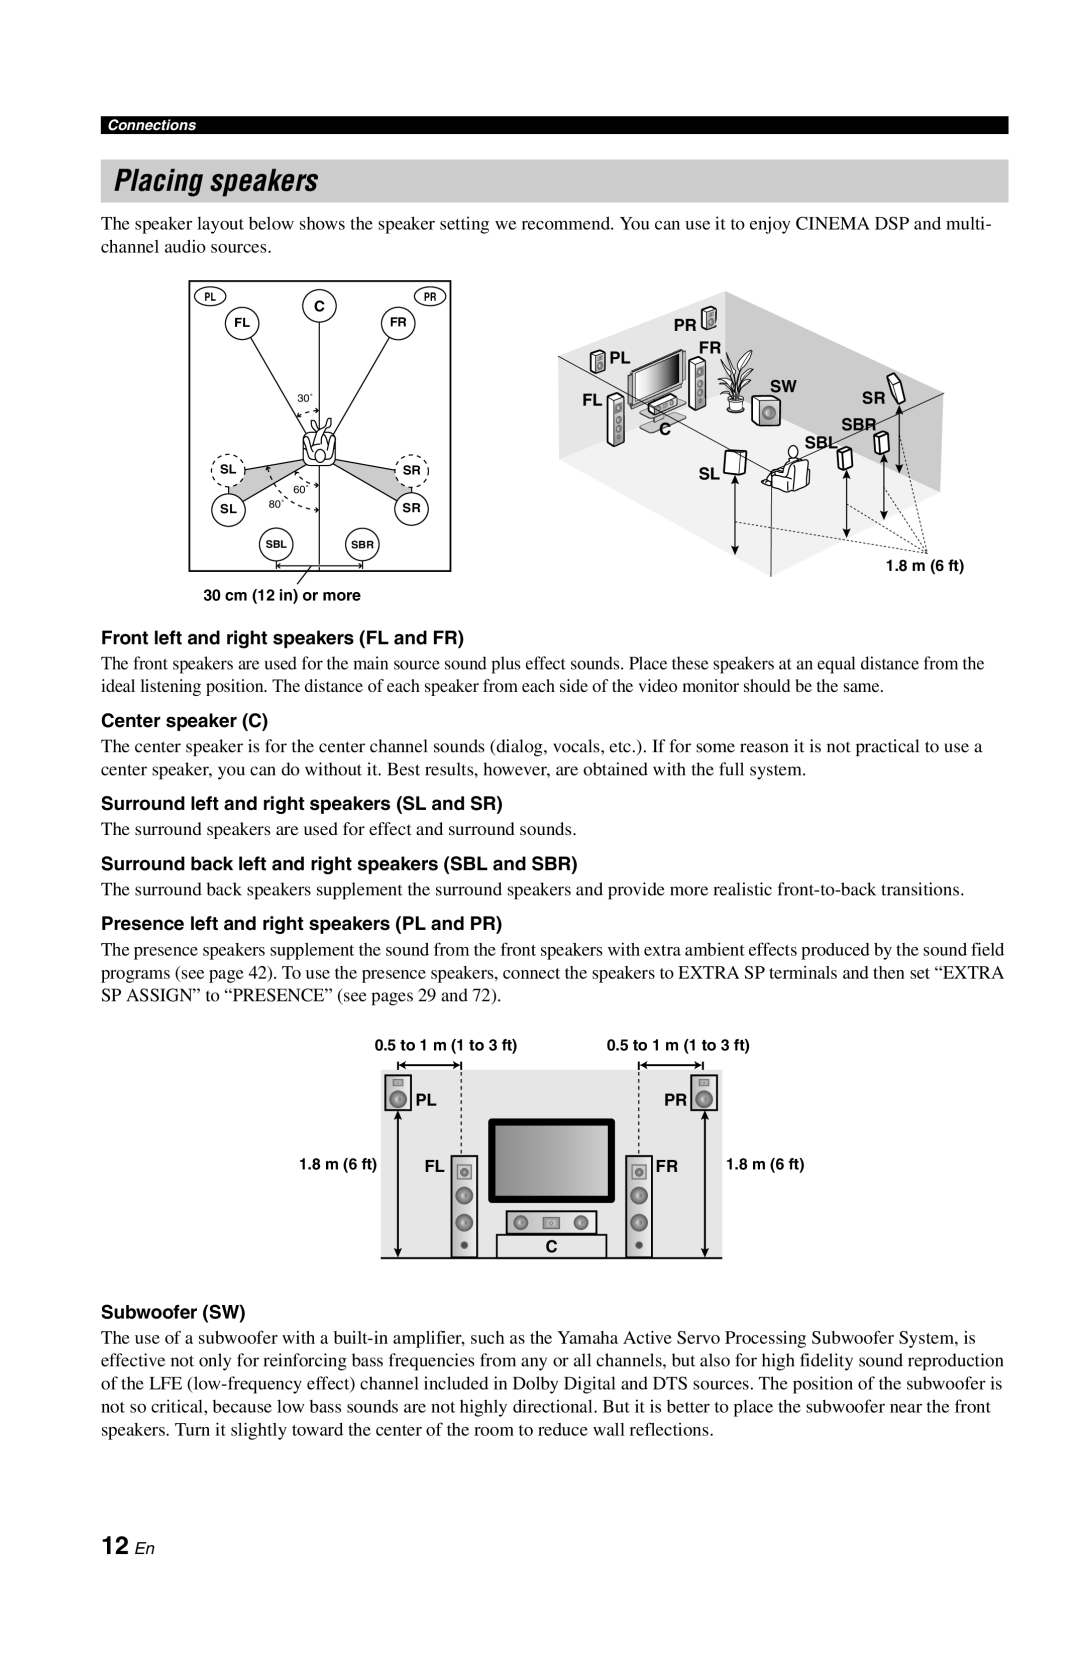 Yamaha RX-V861 owner manual Placing speakers, 12 En 